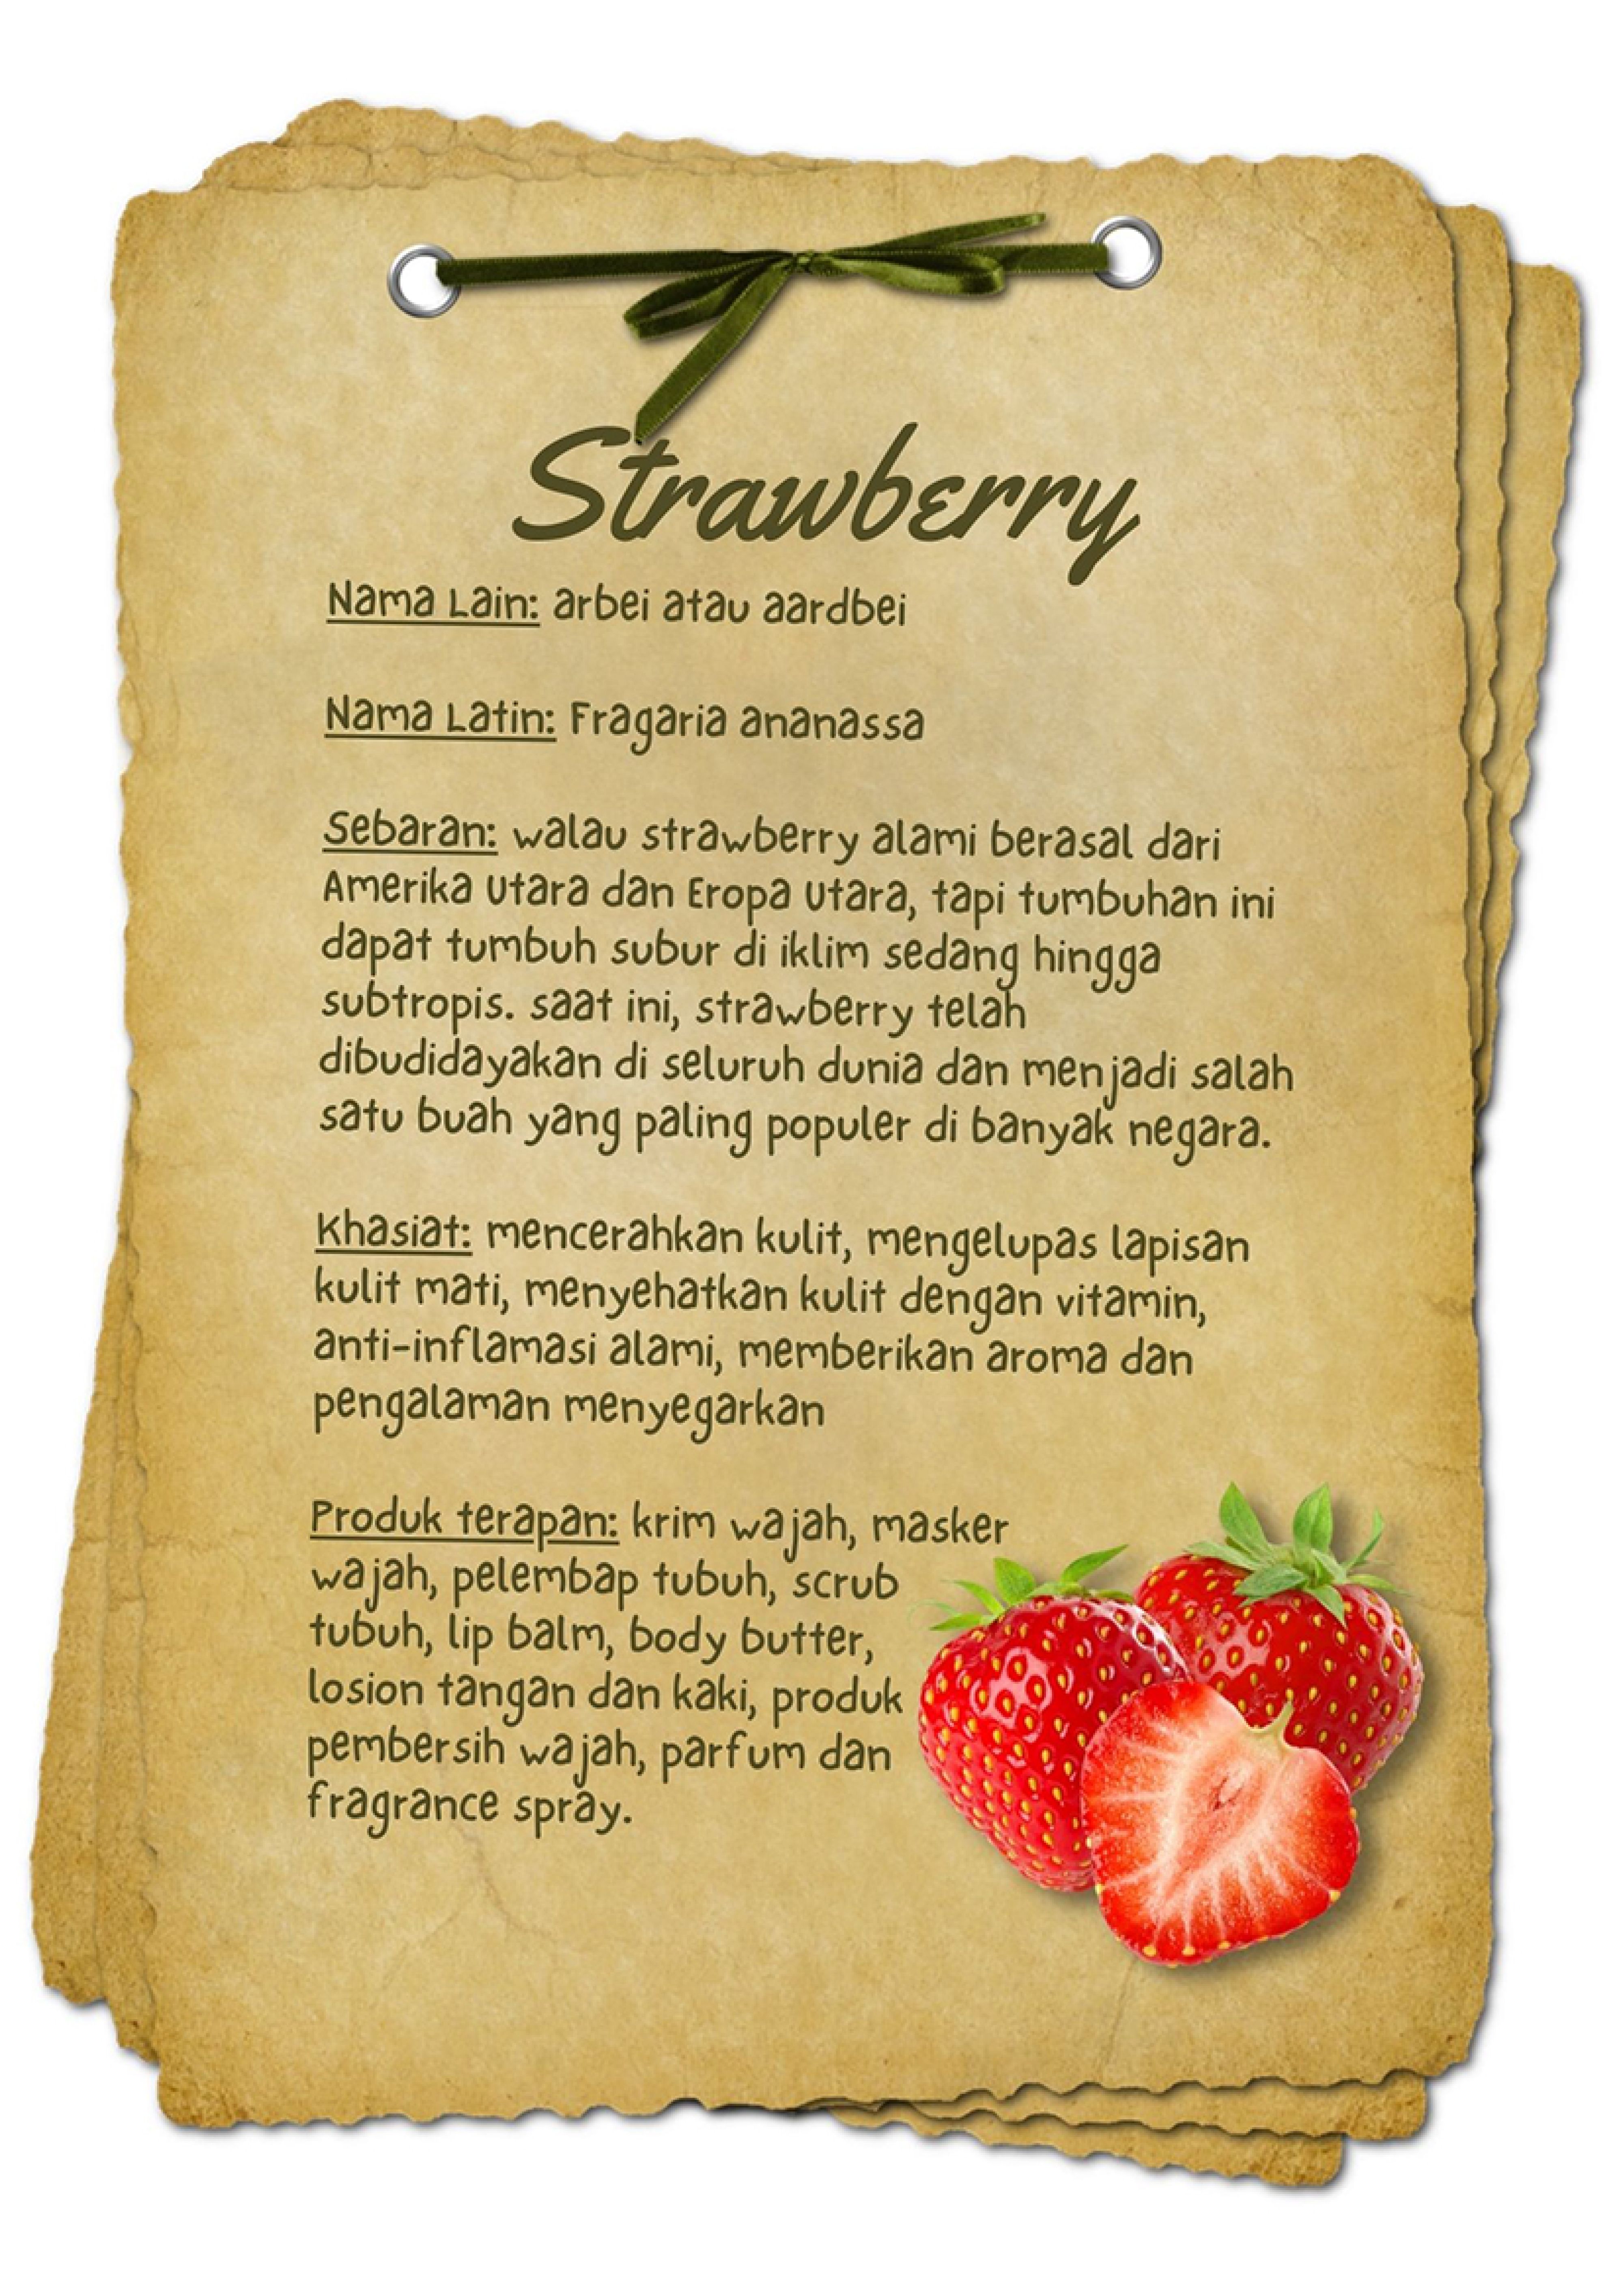 Bahan Aktif Strawberry - Beautyversity.jpg